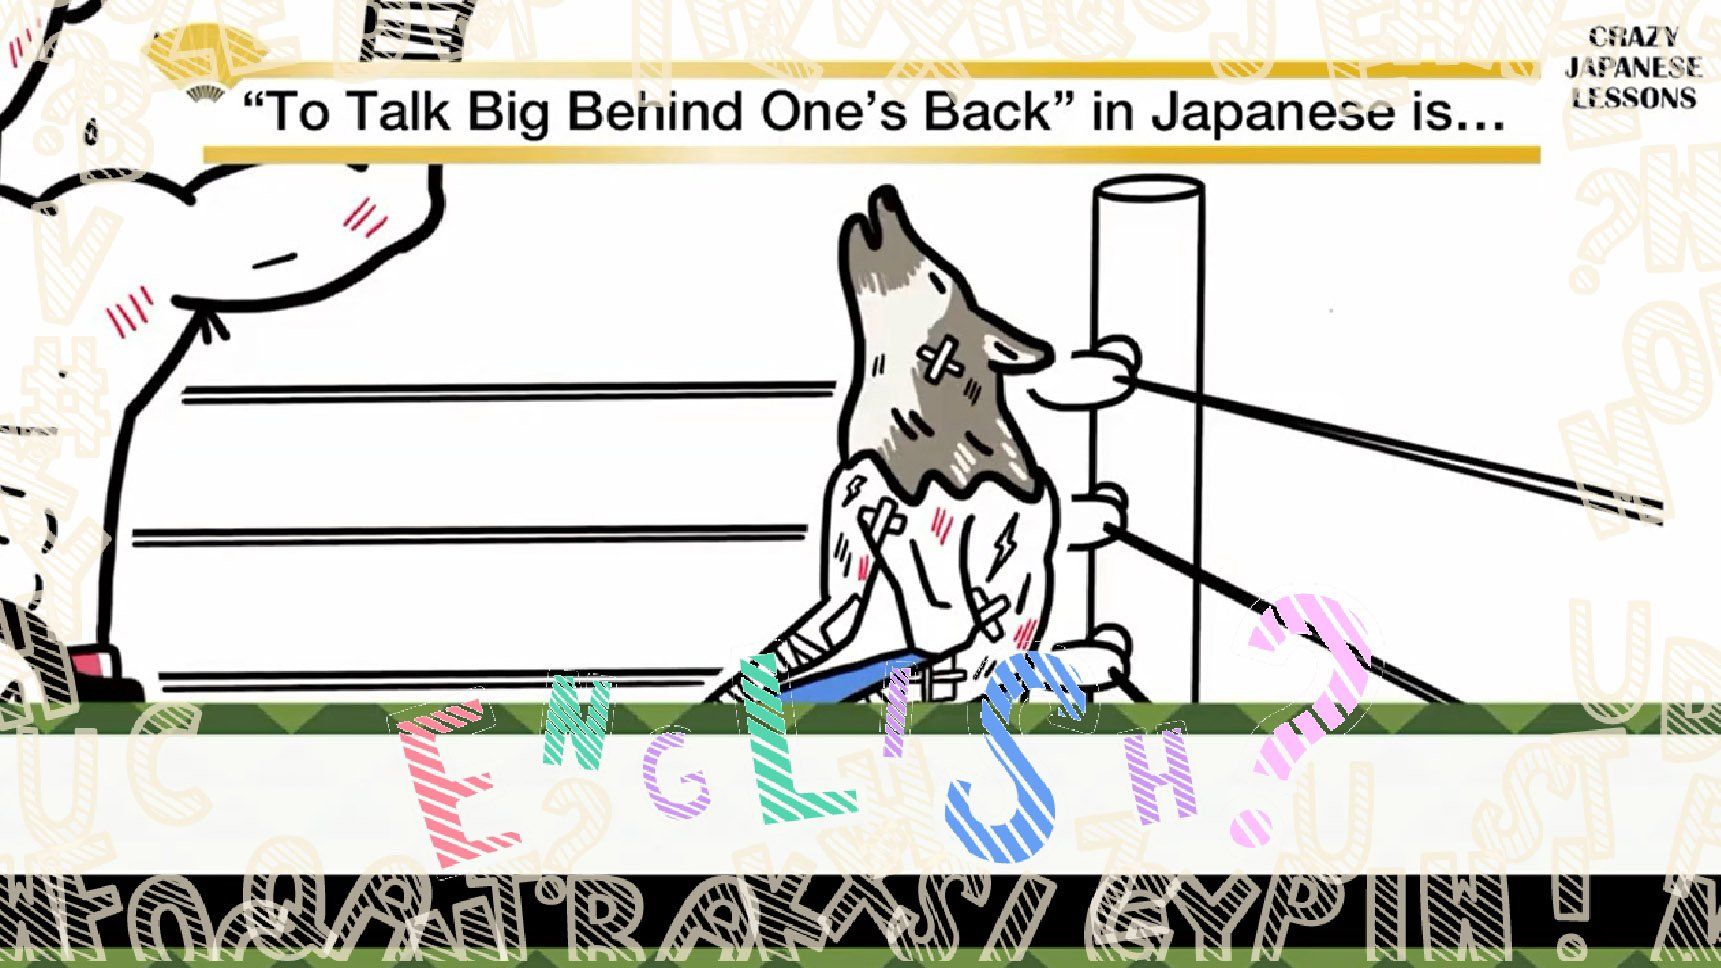 クレイジーな日本語 負け犬の遠吠え 英語で言えますか 文春オンライン